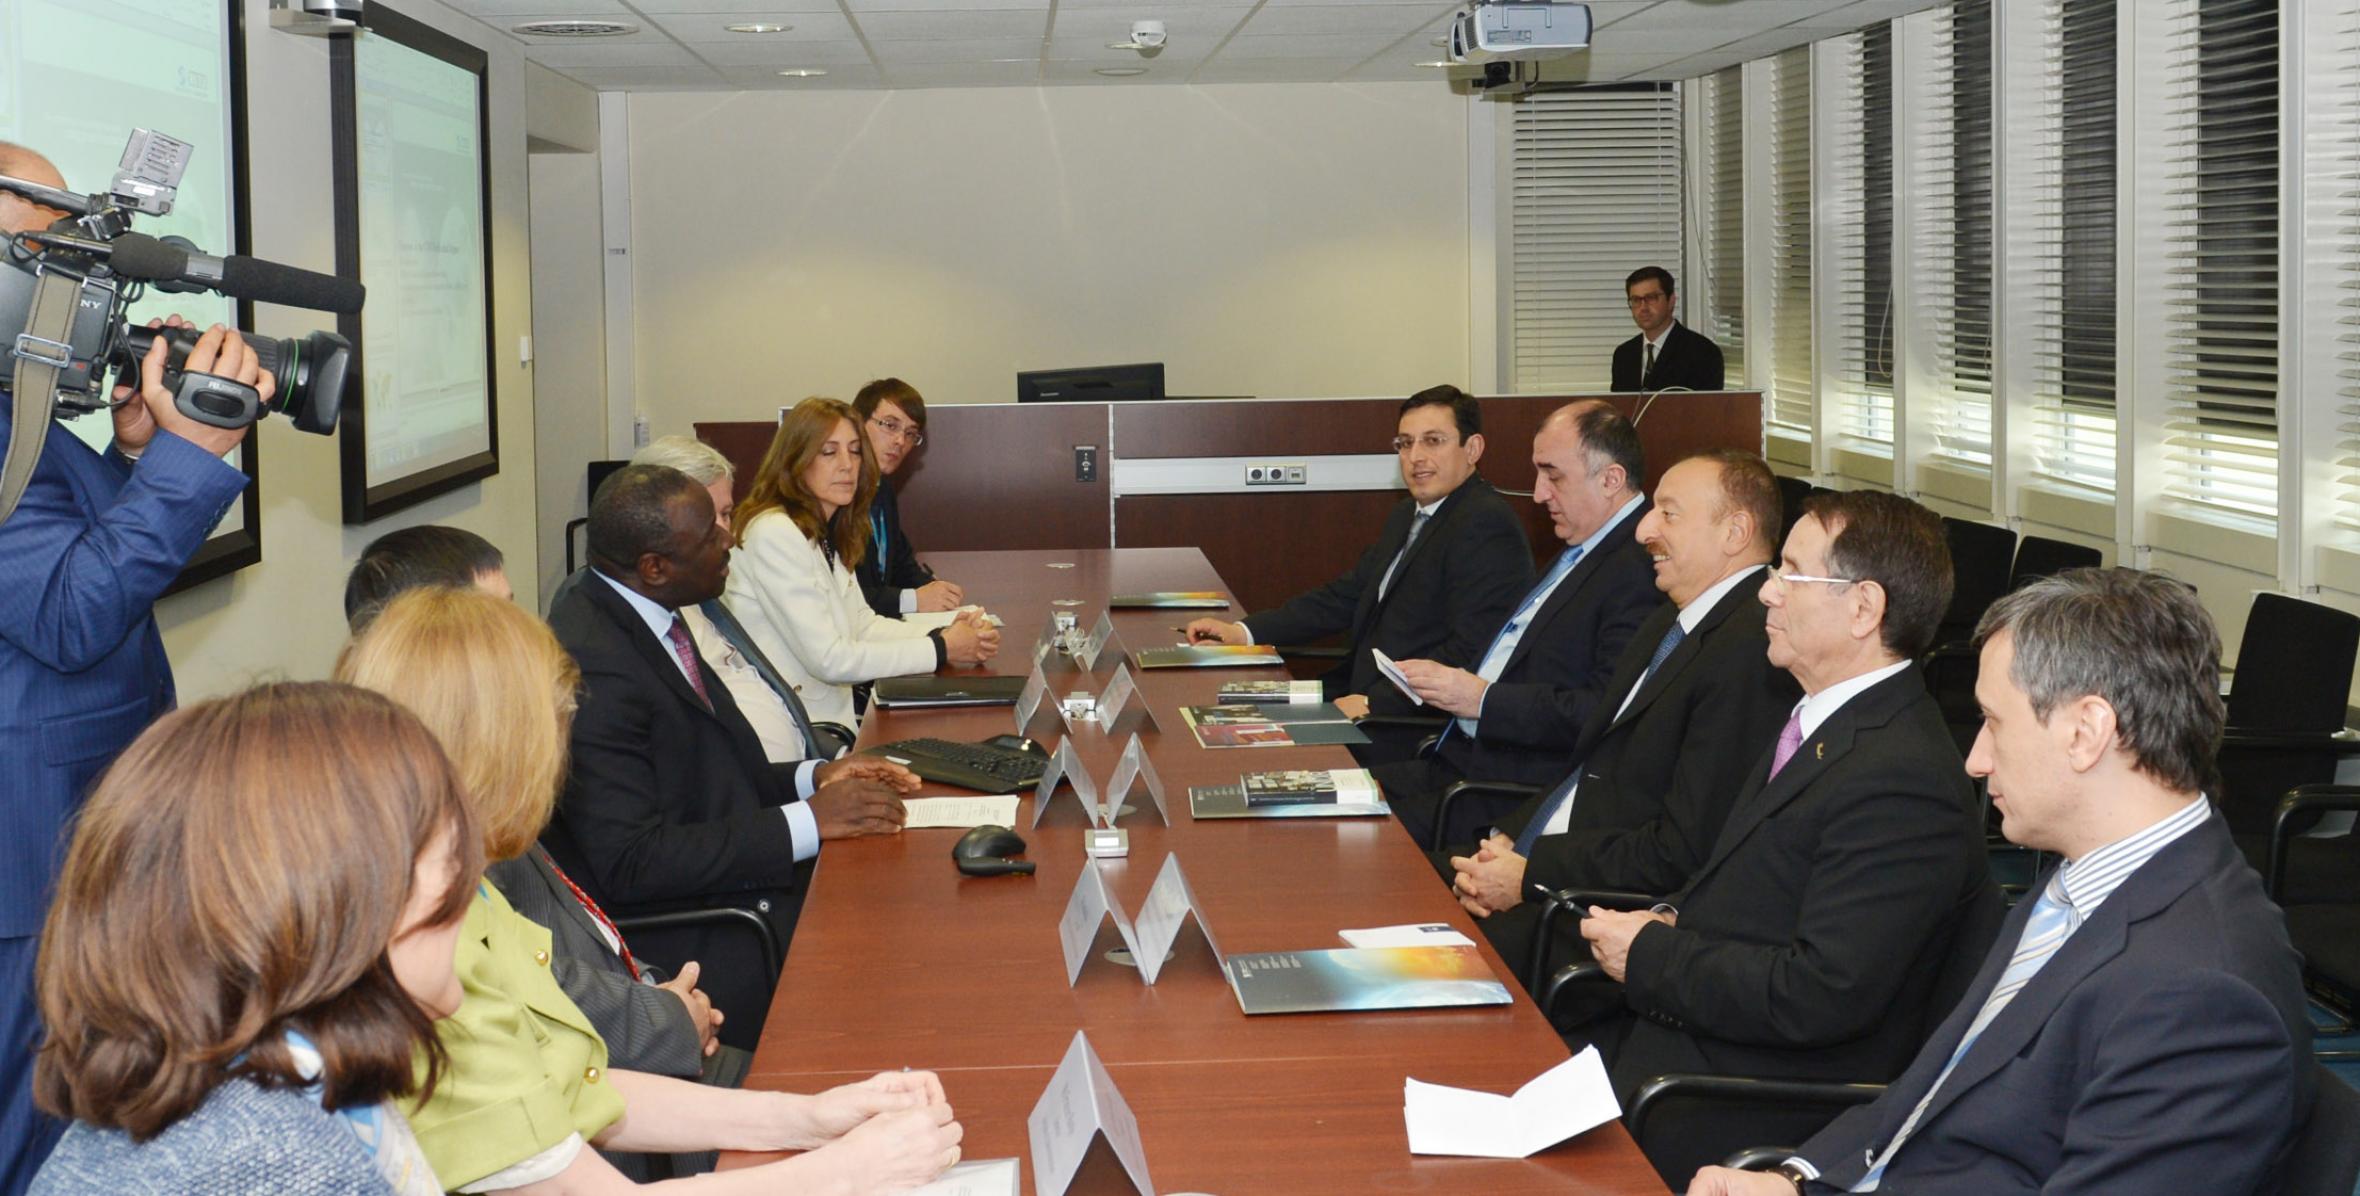 Ильхам Алиев встретился в Вене с исполнительным секретарем Подготовительной комиссии Организации Договора о всеобъемлющем запрещении ядерных испытаний